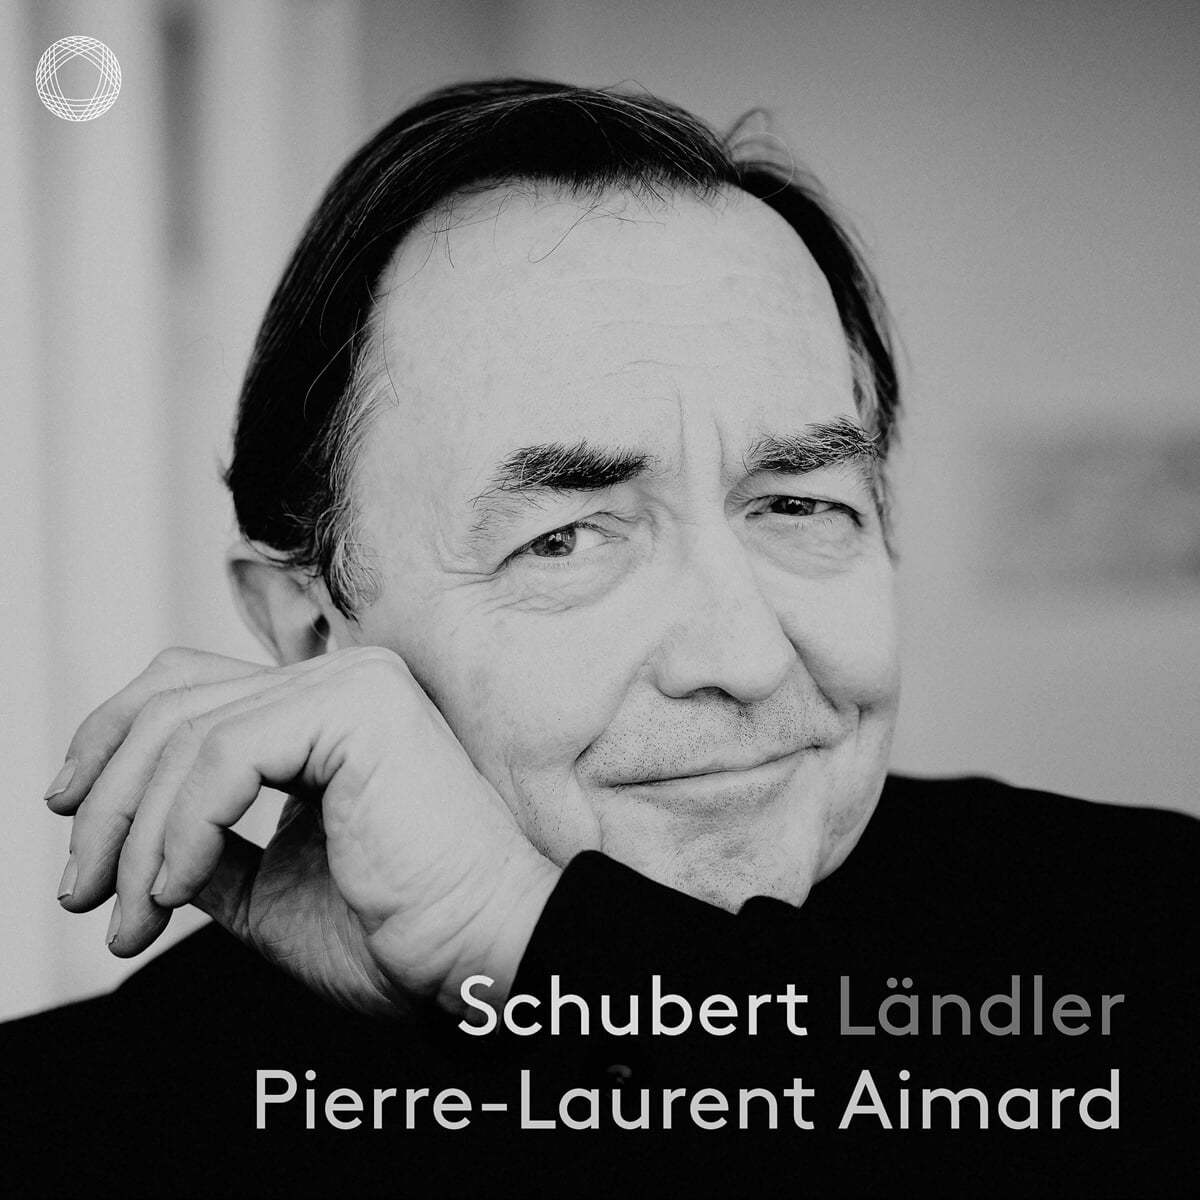 Pierre-Laurent Aimard 슈베르트: 랜틀러 (Schubert: Landler)